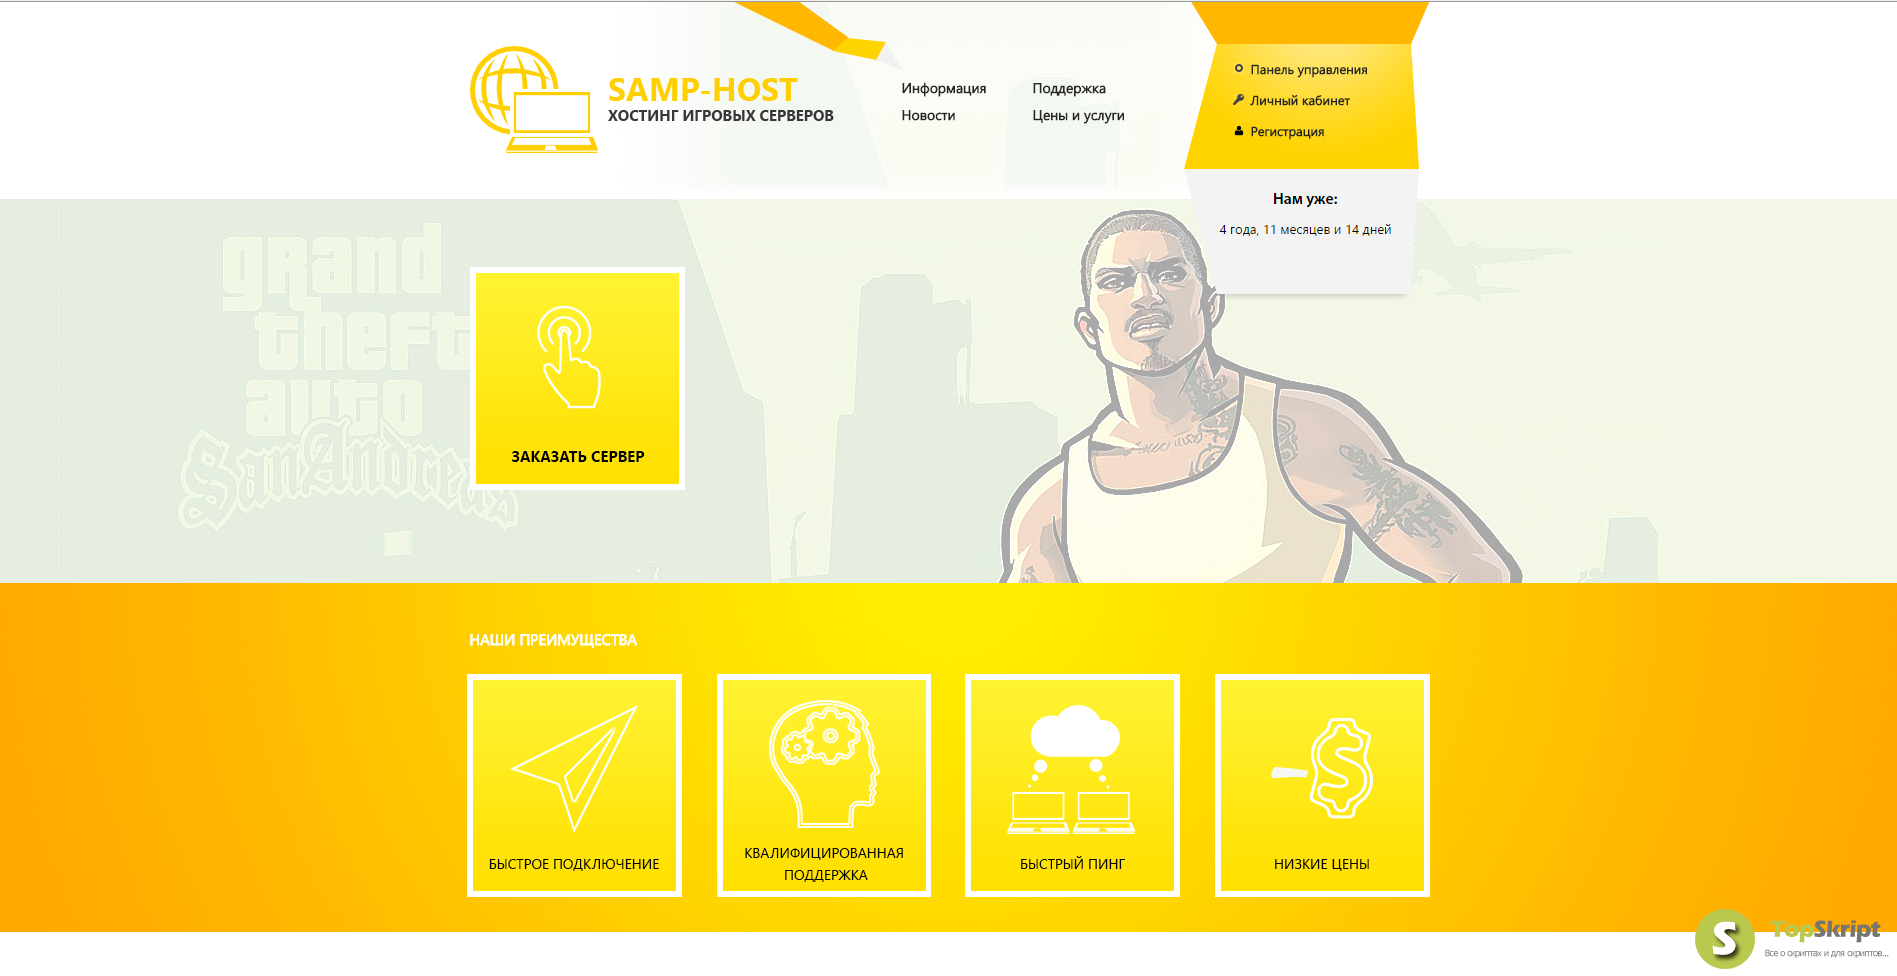 Шаблон сайта SAMP. Html шаблоны SAMP. Шаблон для сервера SAMP. Шаблон для сайта крмп. Hosting samp host